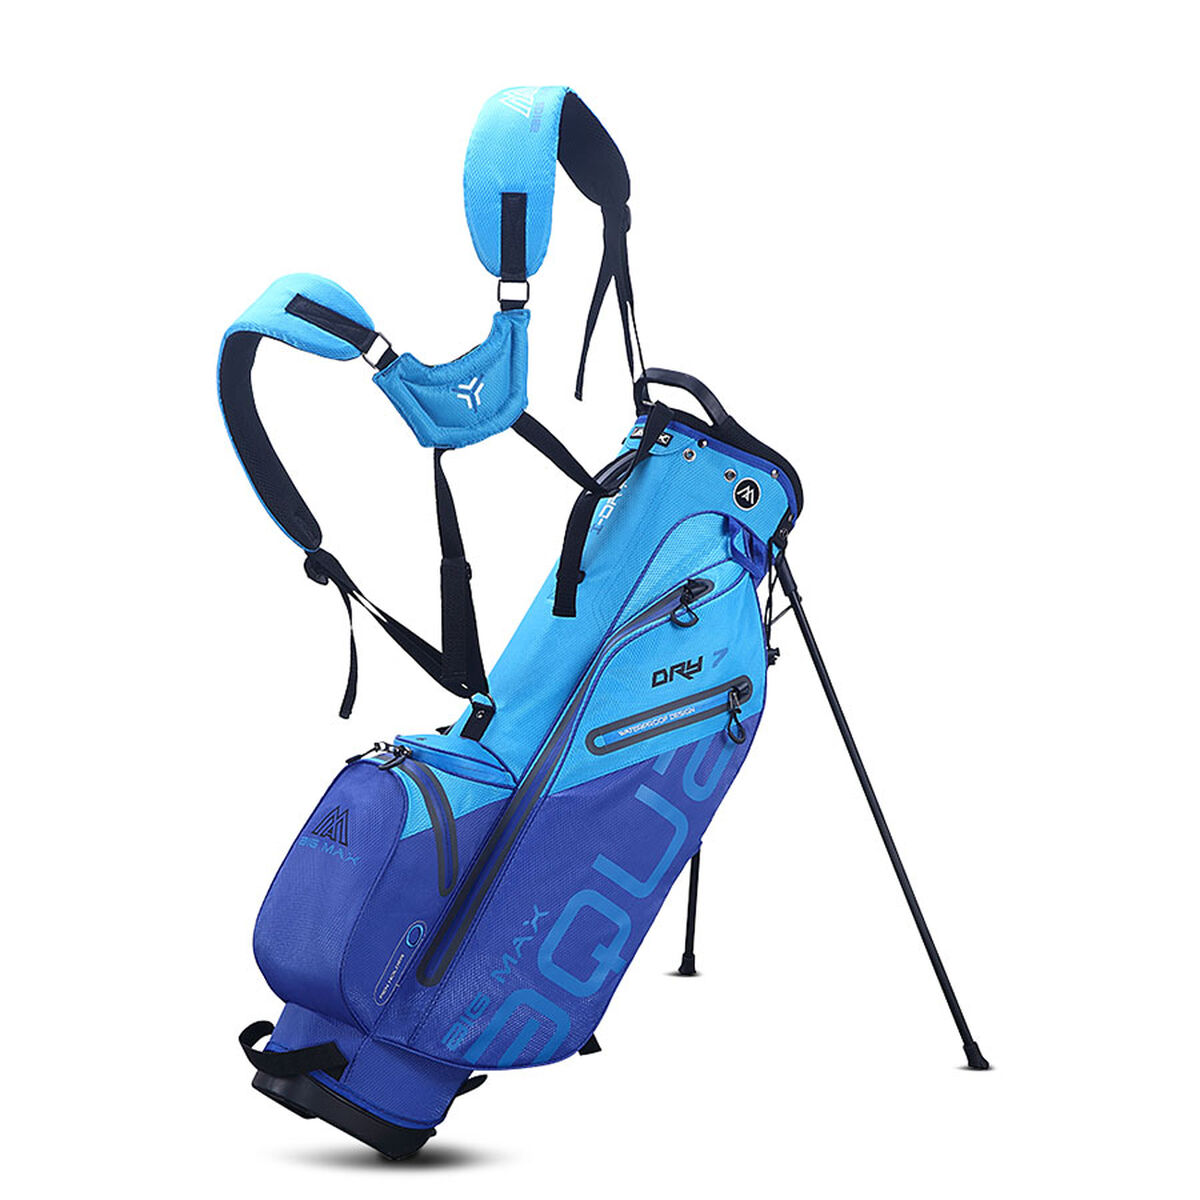 BIG MAX Aqua Seven G Waterproof Golf Stand Bag, Royal/sky blue | American Golf von BIG MAX